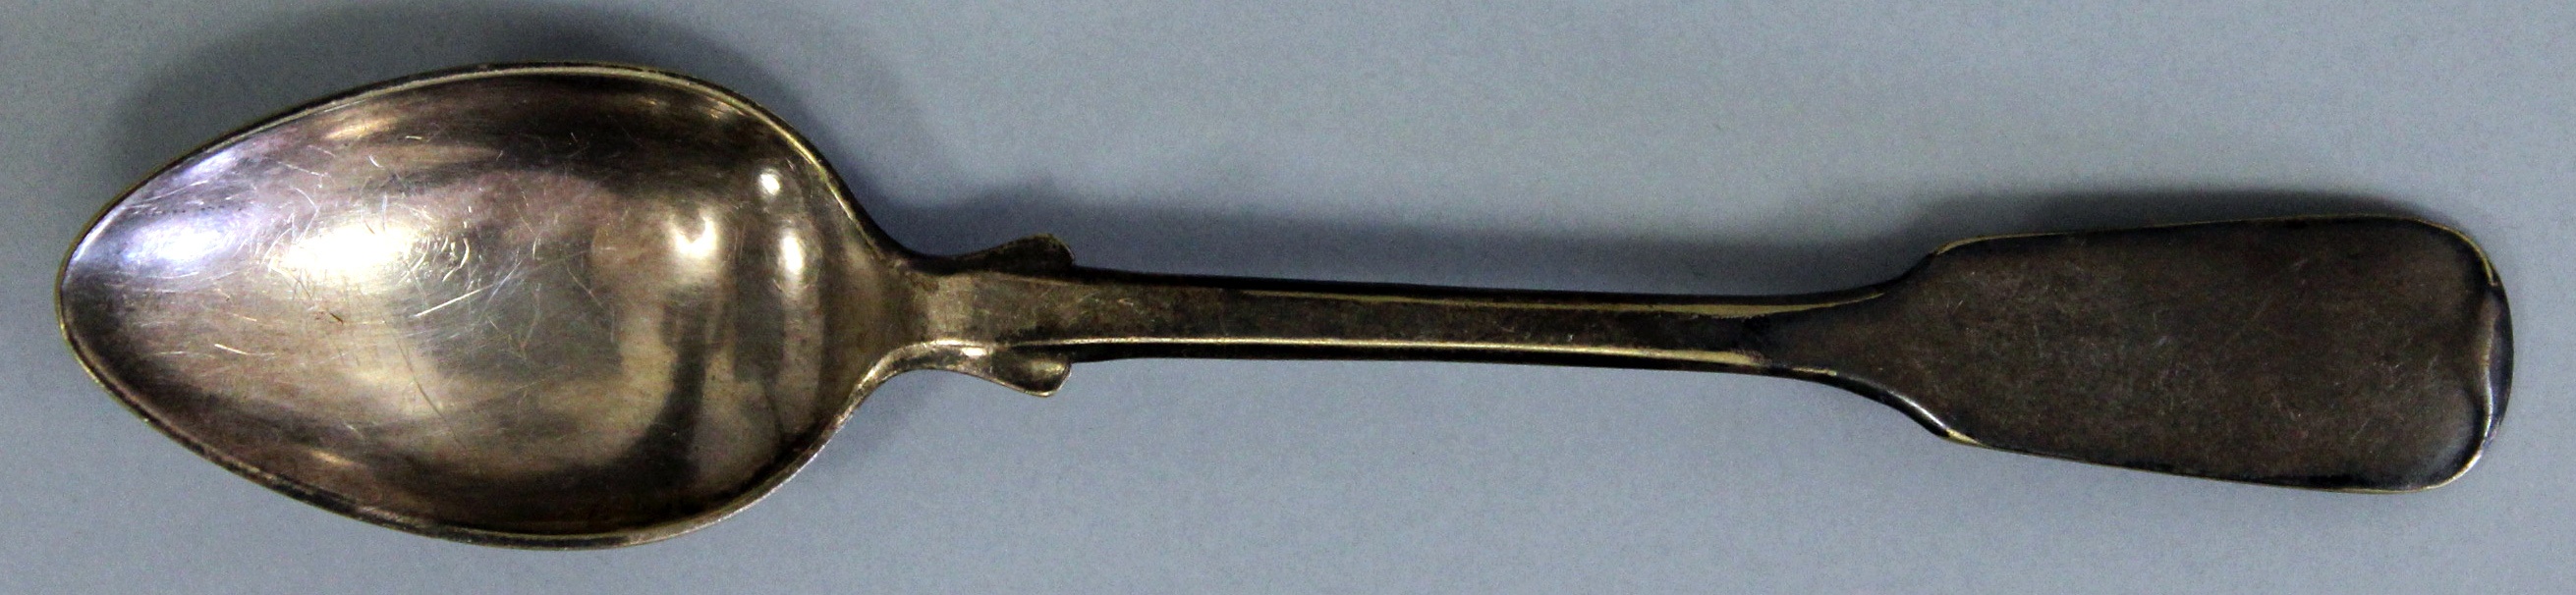 Löffel, klein, spatenförmiger Stiel (Museum Wolmirstedt RR-F)